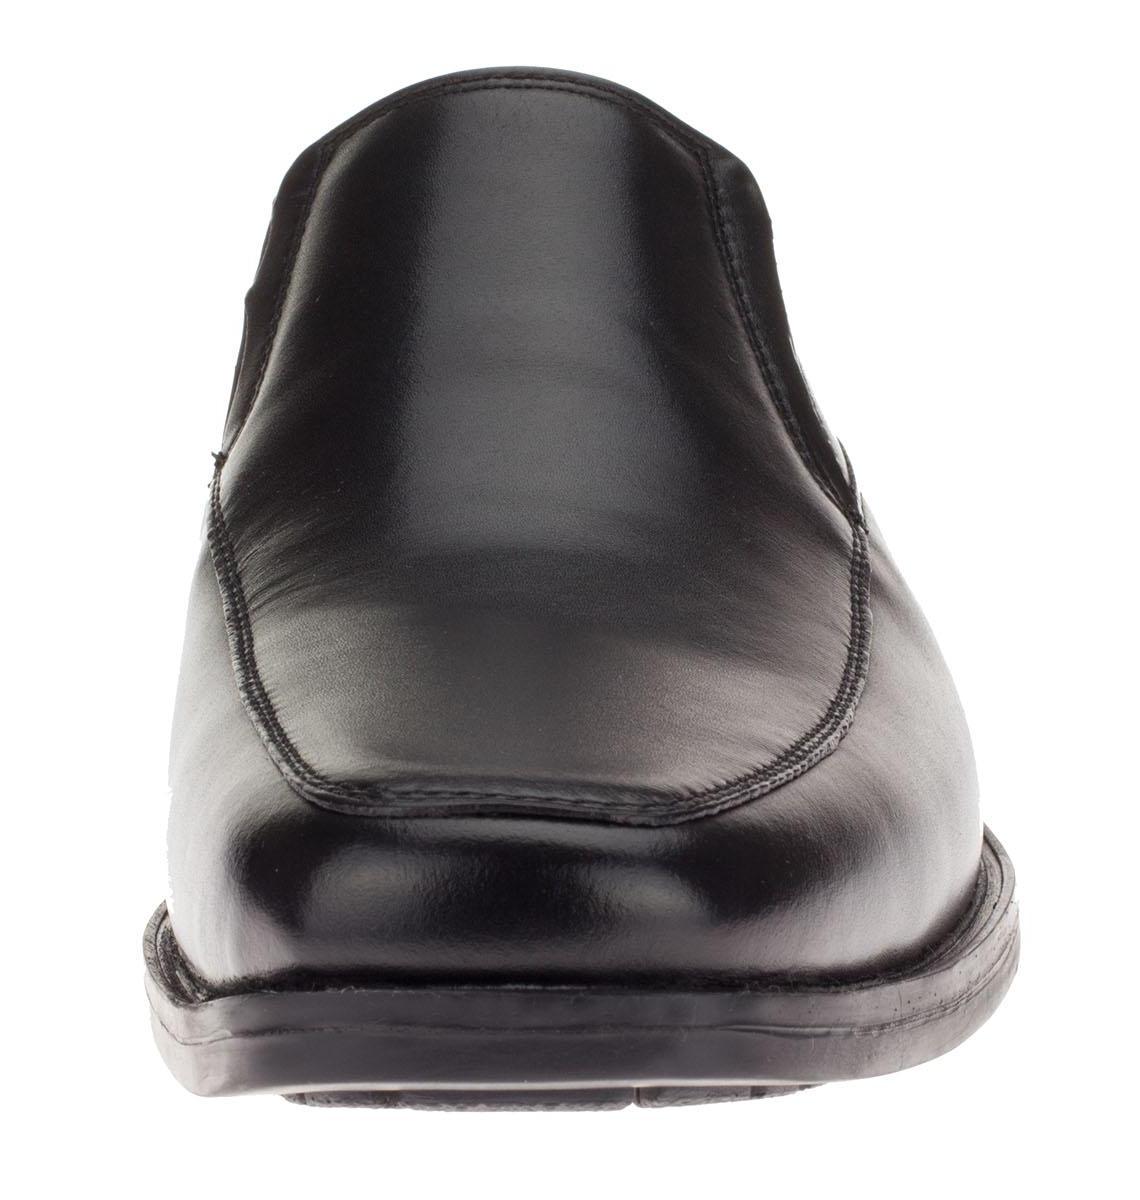 Mens Lenox Black Leather Comfort Dress Shoe DTI DARYA - image 2 of 7